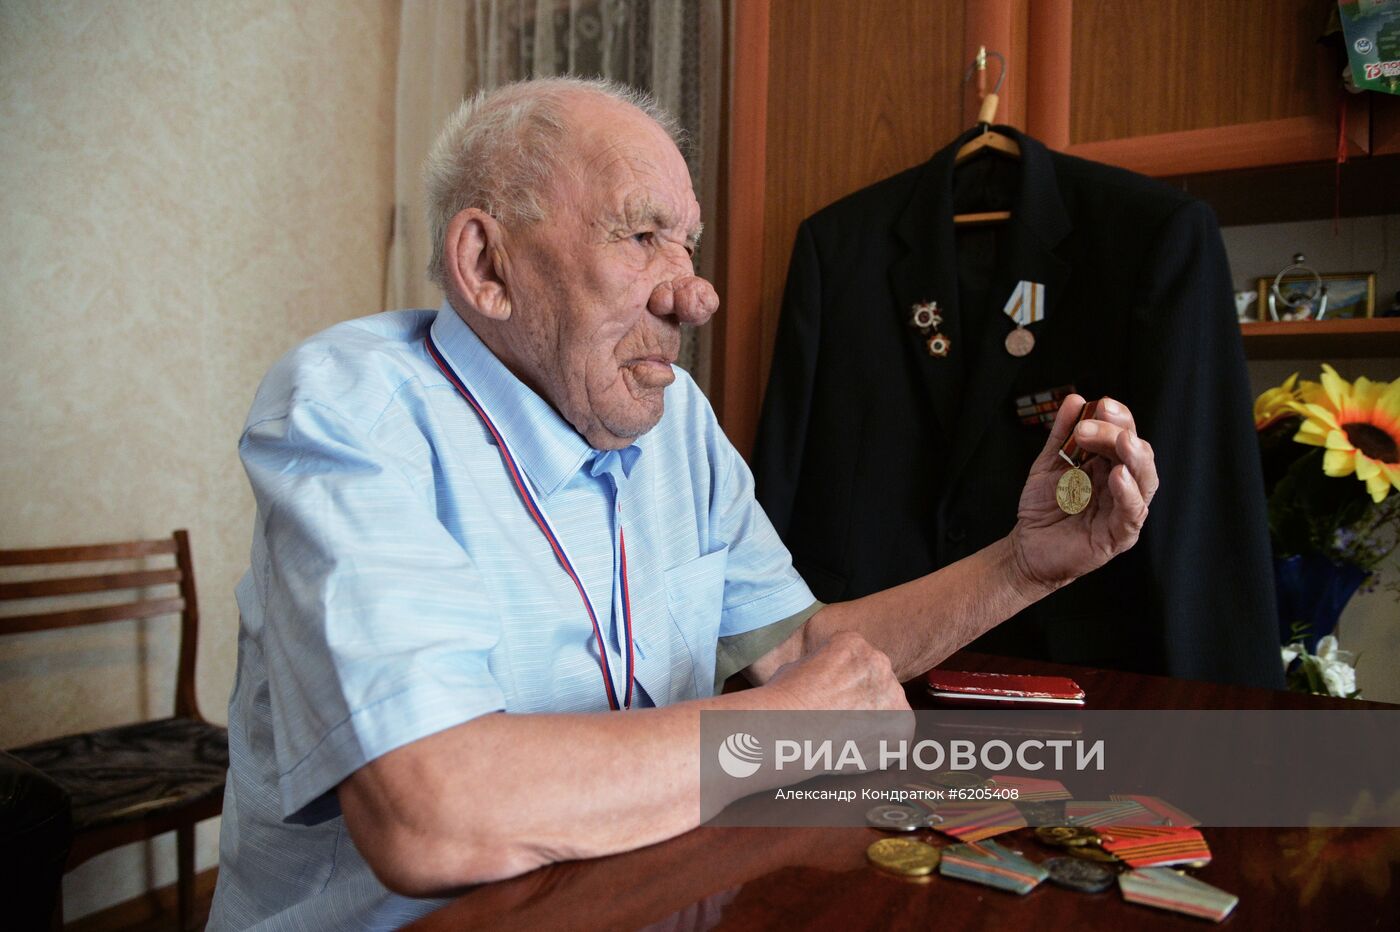 Ветеран Великой Отечественной войны Н. Г. Токсин